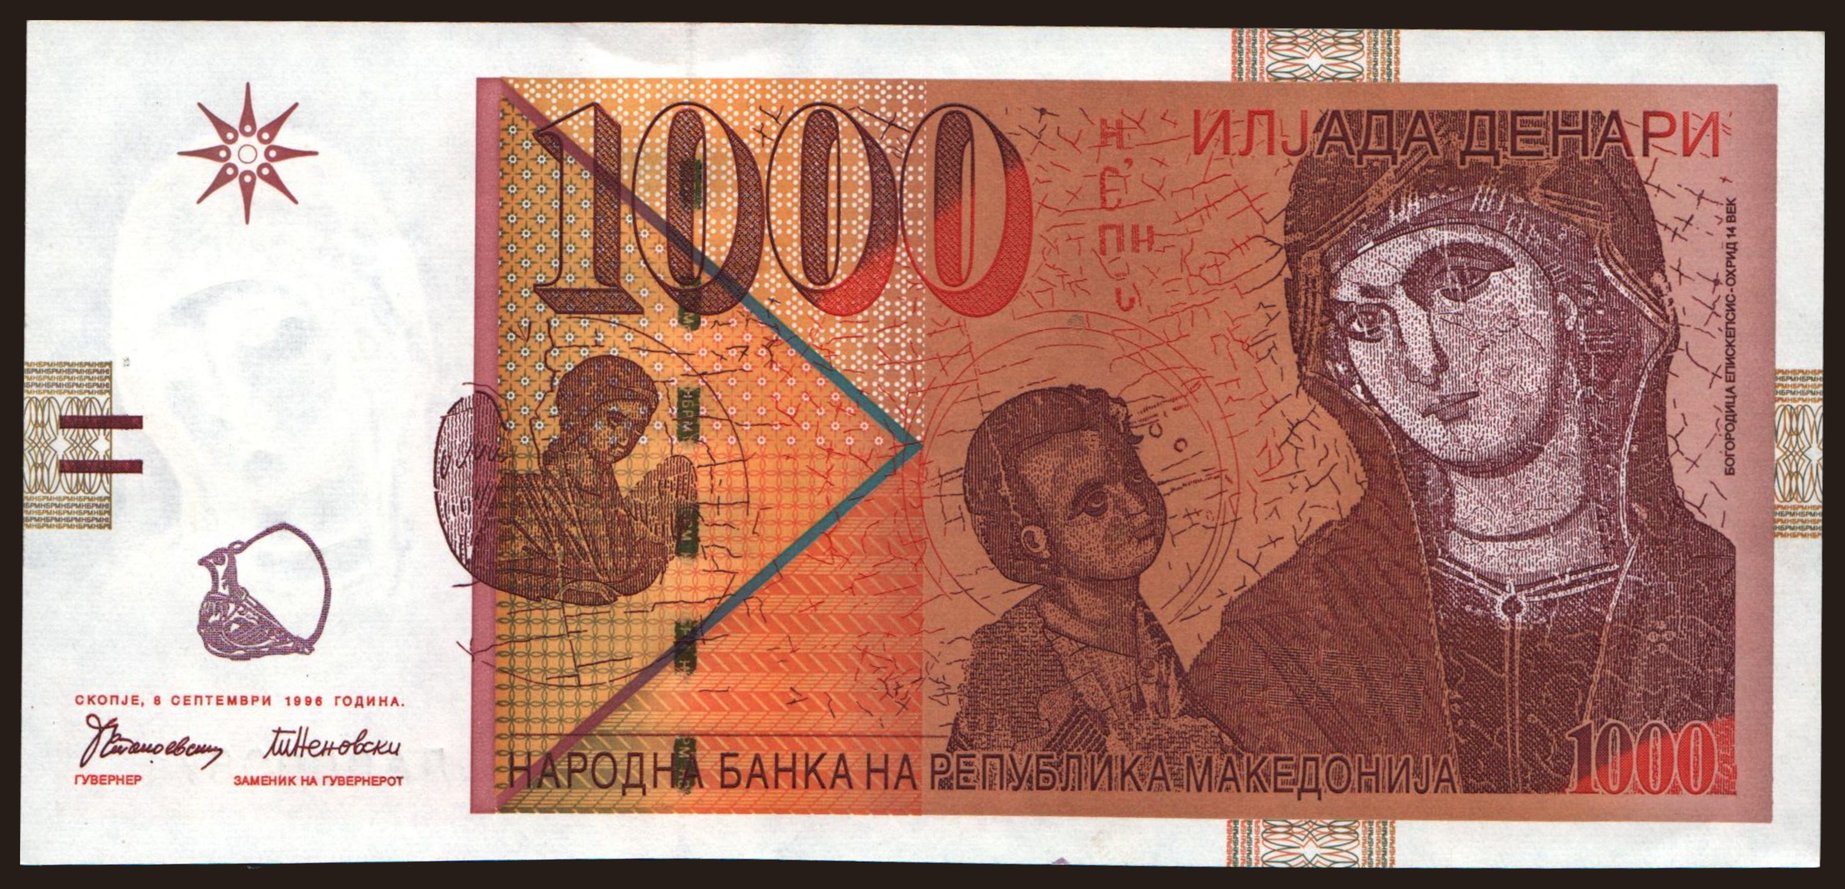 1000 denari, 1996